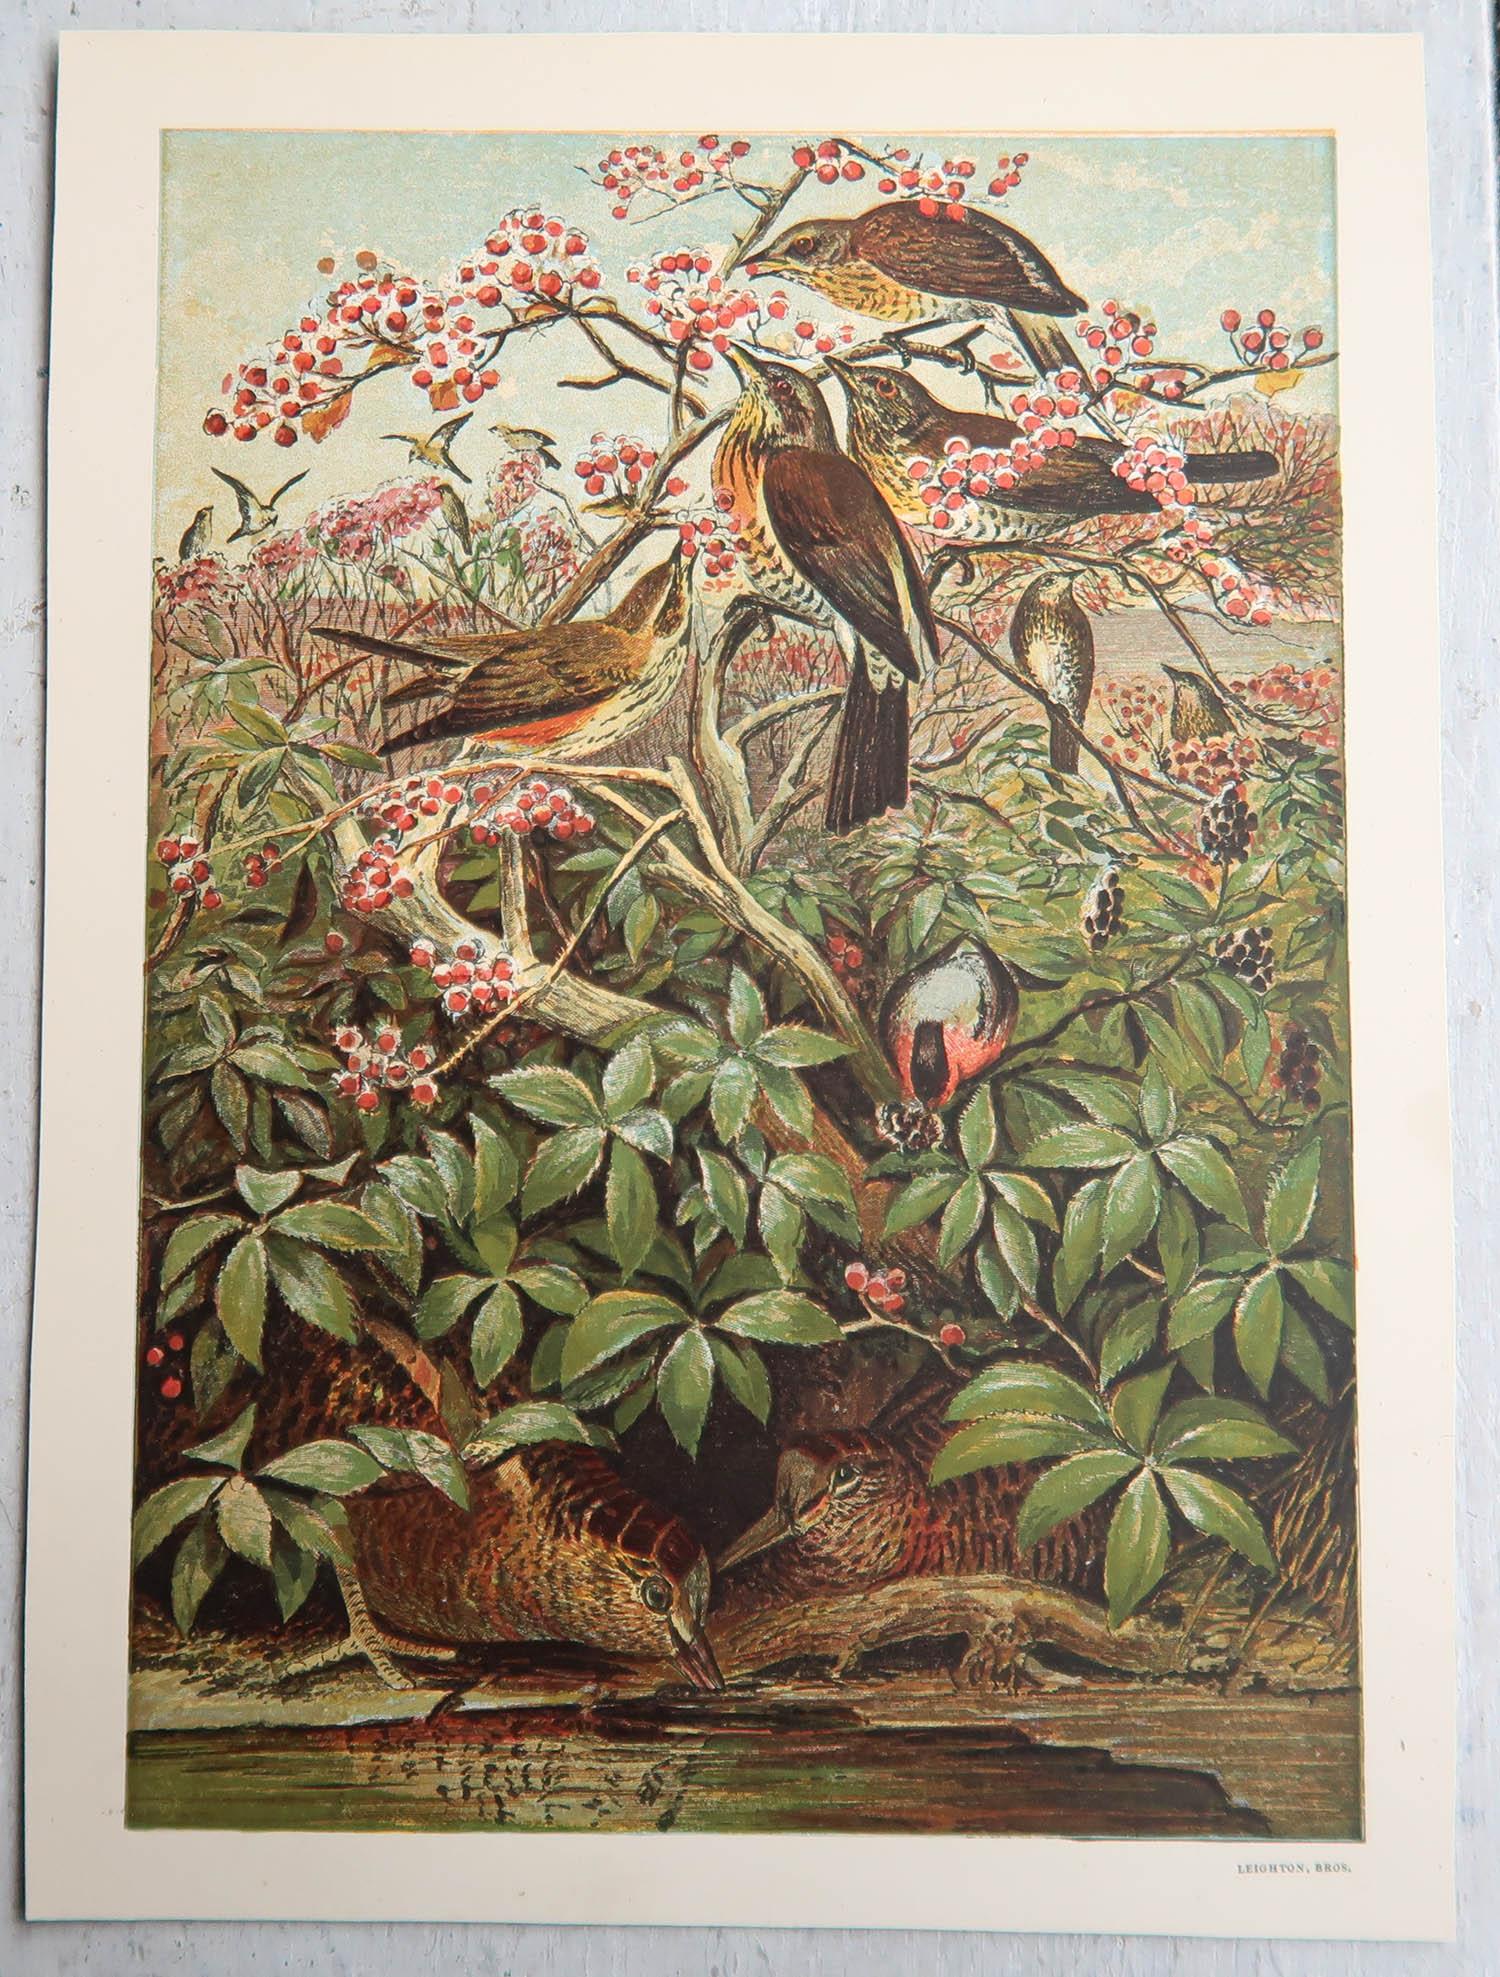 Merveilleux ensemble de 6 reproductions d'oiseaux.

De belles couleurs vives.

Chromolithographies par Leighton Brothers

Publié vers 1880

Non encadré.

La mesure indiquée est le format papier d'une impression.